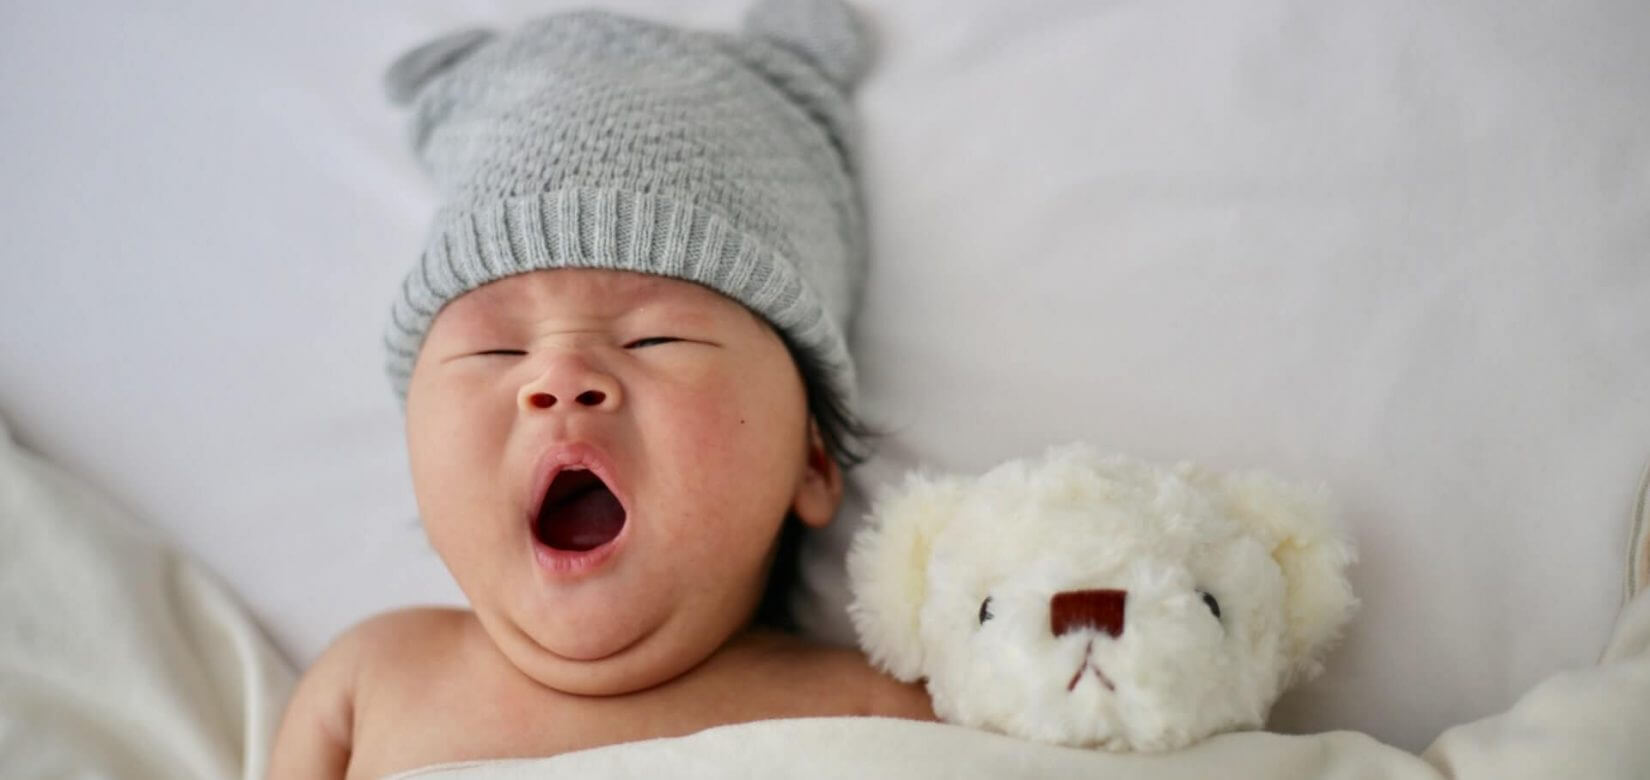 Γιατί κλαίει το μωρό; - Κάθε πόσην ώρα να το ταΐζω; Απαντήσεις στα online σεμινάρια για νέους γονείς